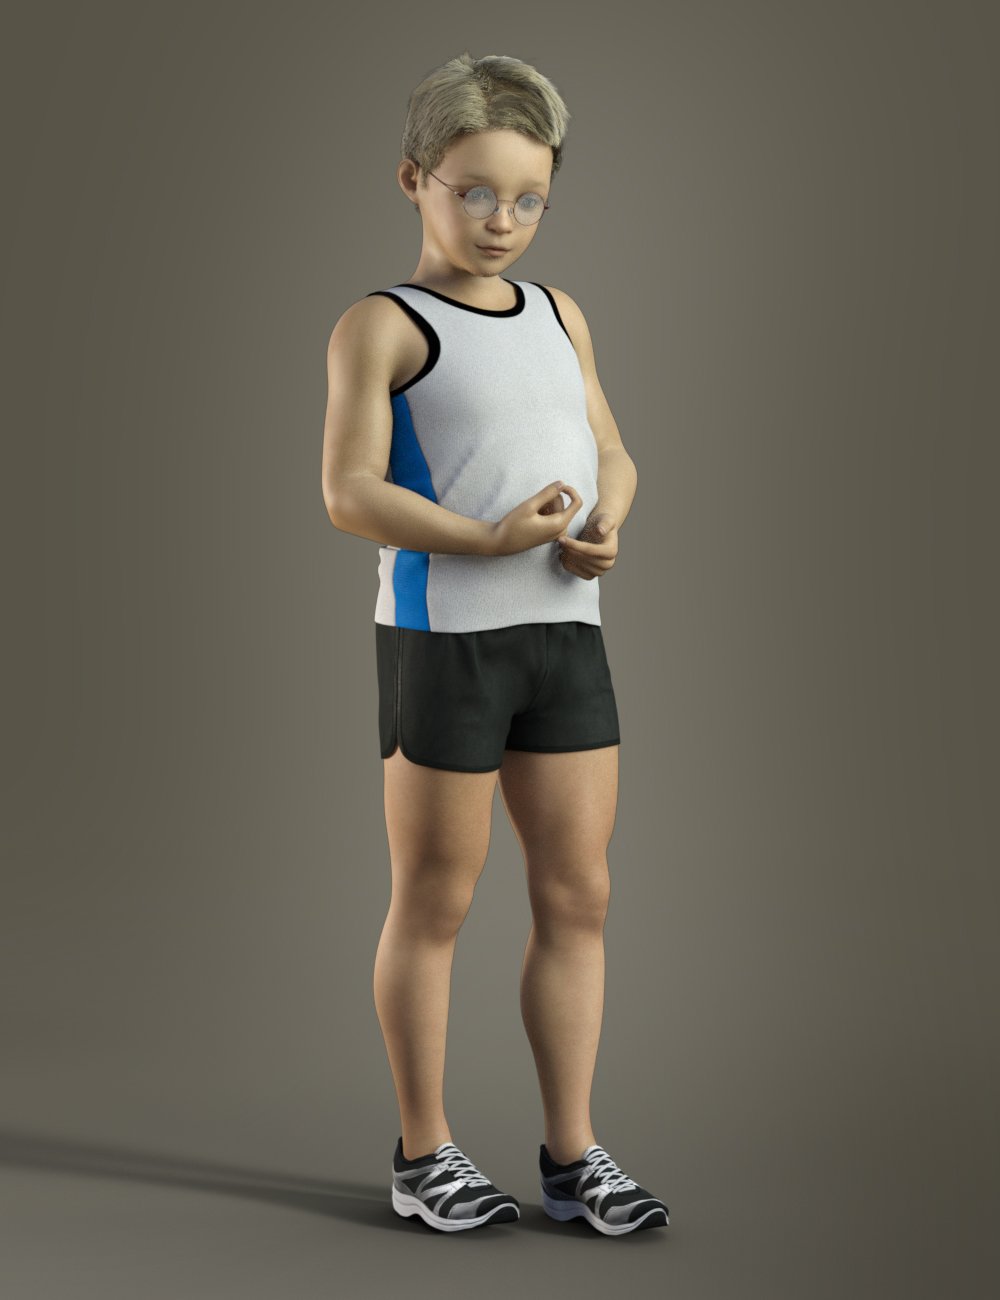 Lola's Son for Genesis 3 Male by: Deepsea, 3D Models by Daz 3D